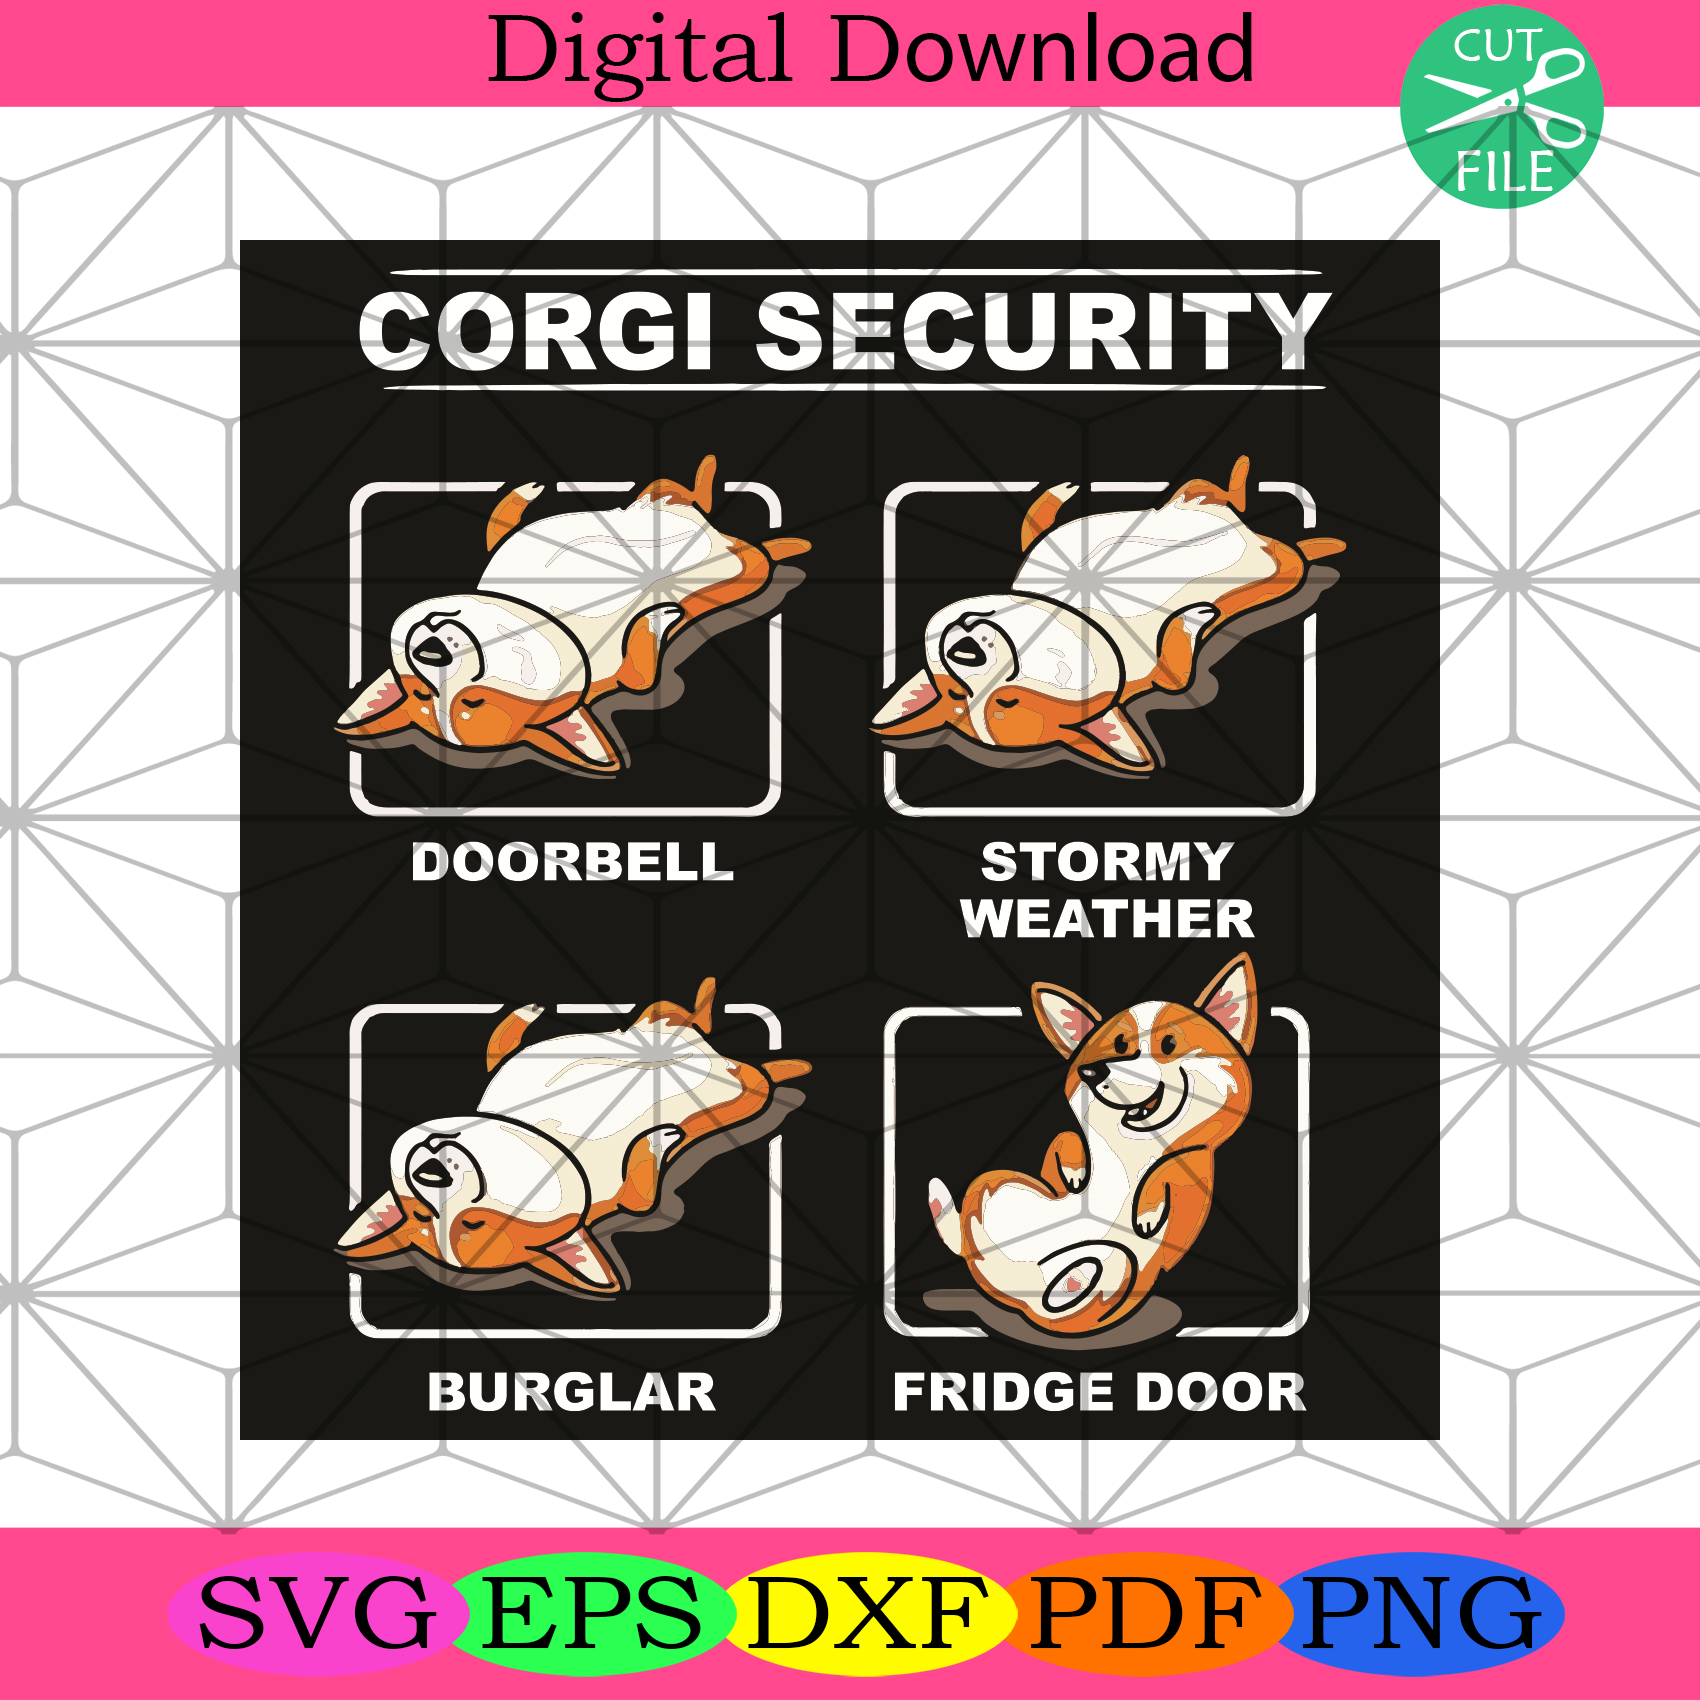 Corgi Security Svg Trending Svg, Corgi Security Svg, Doorbell Svg